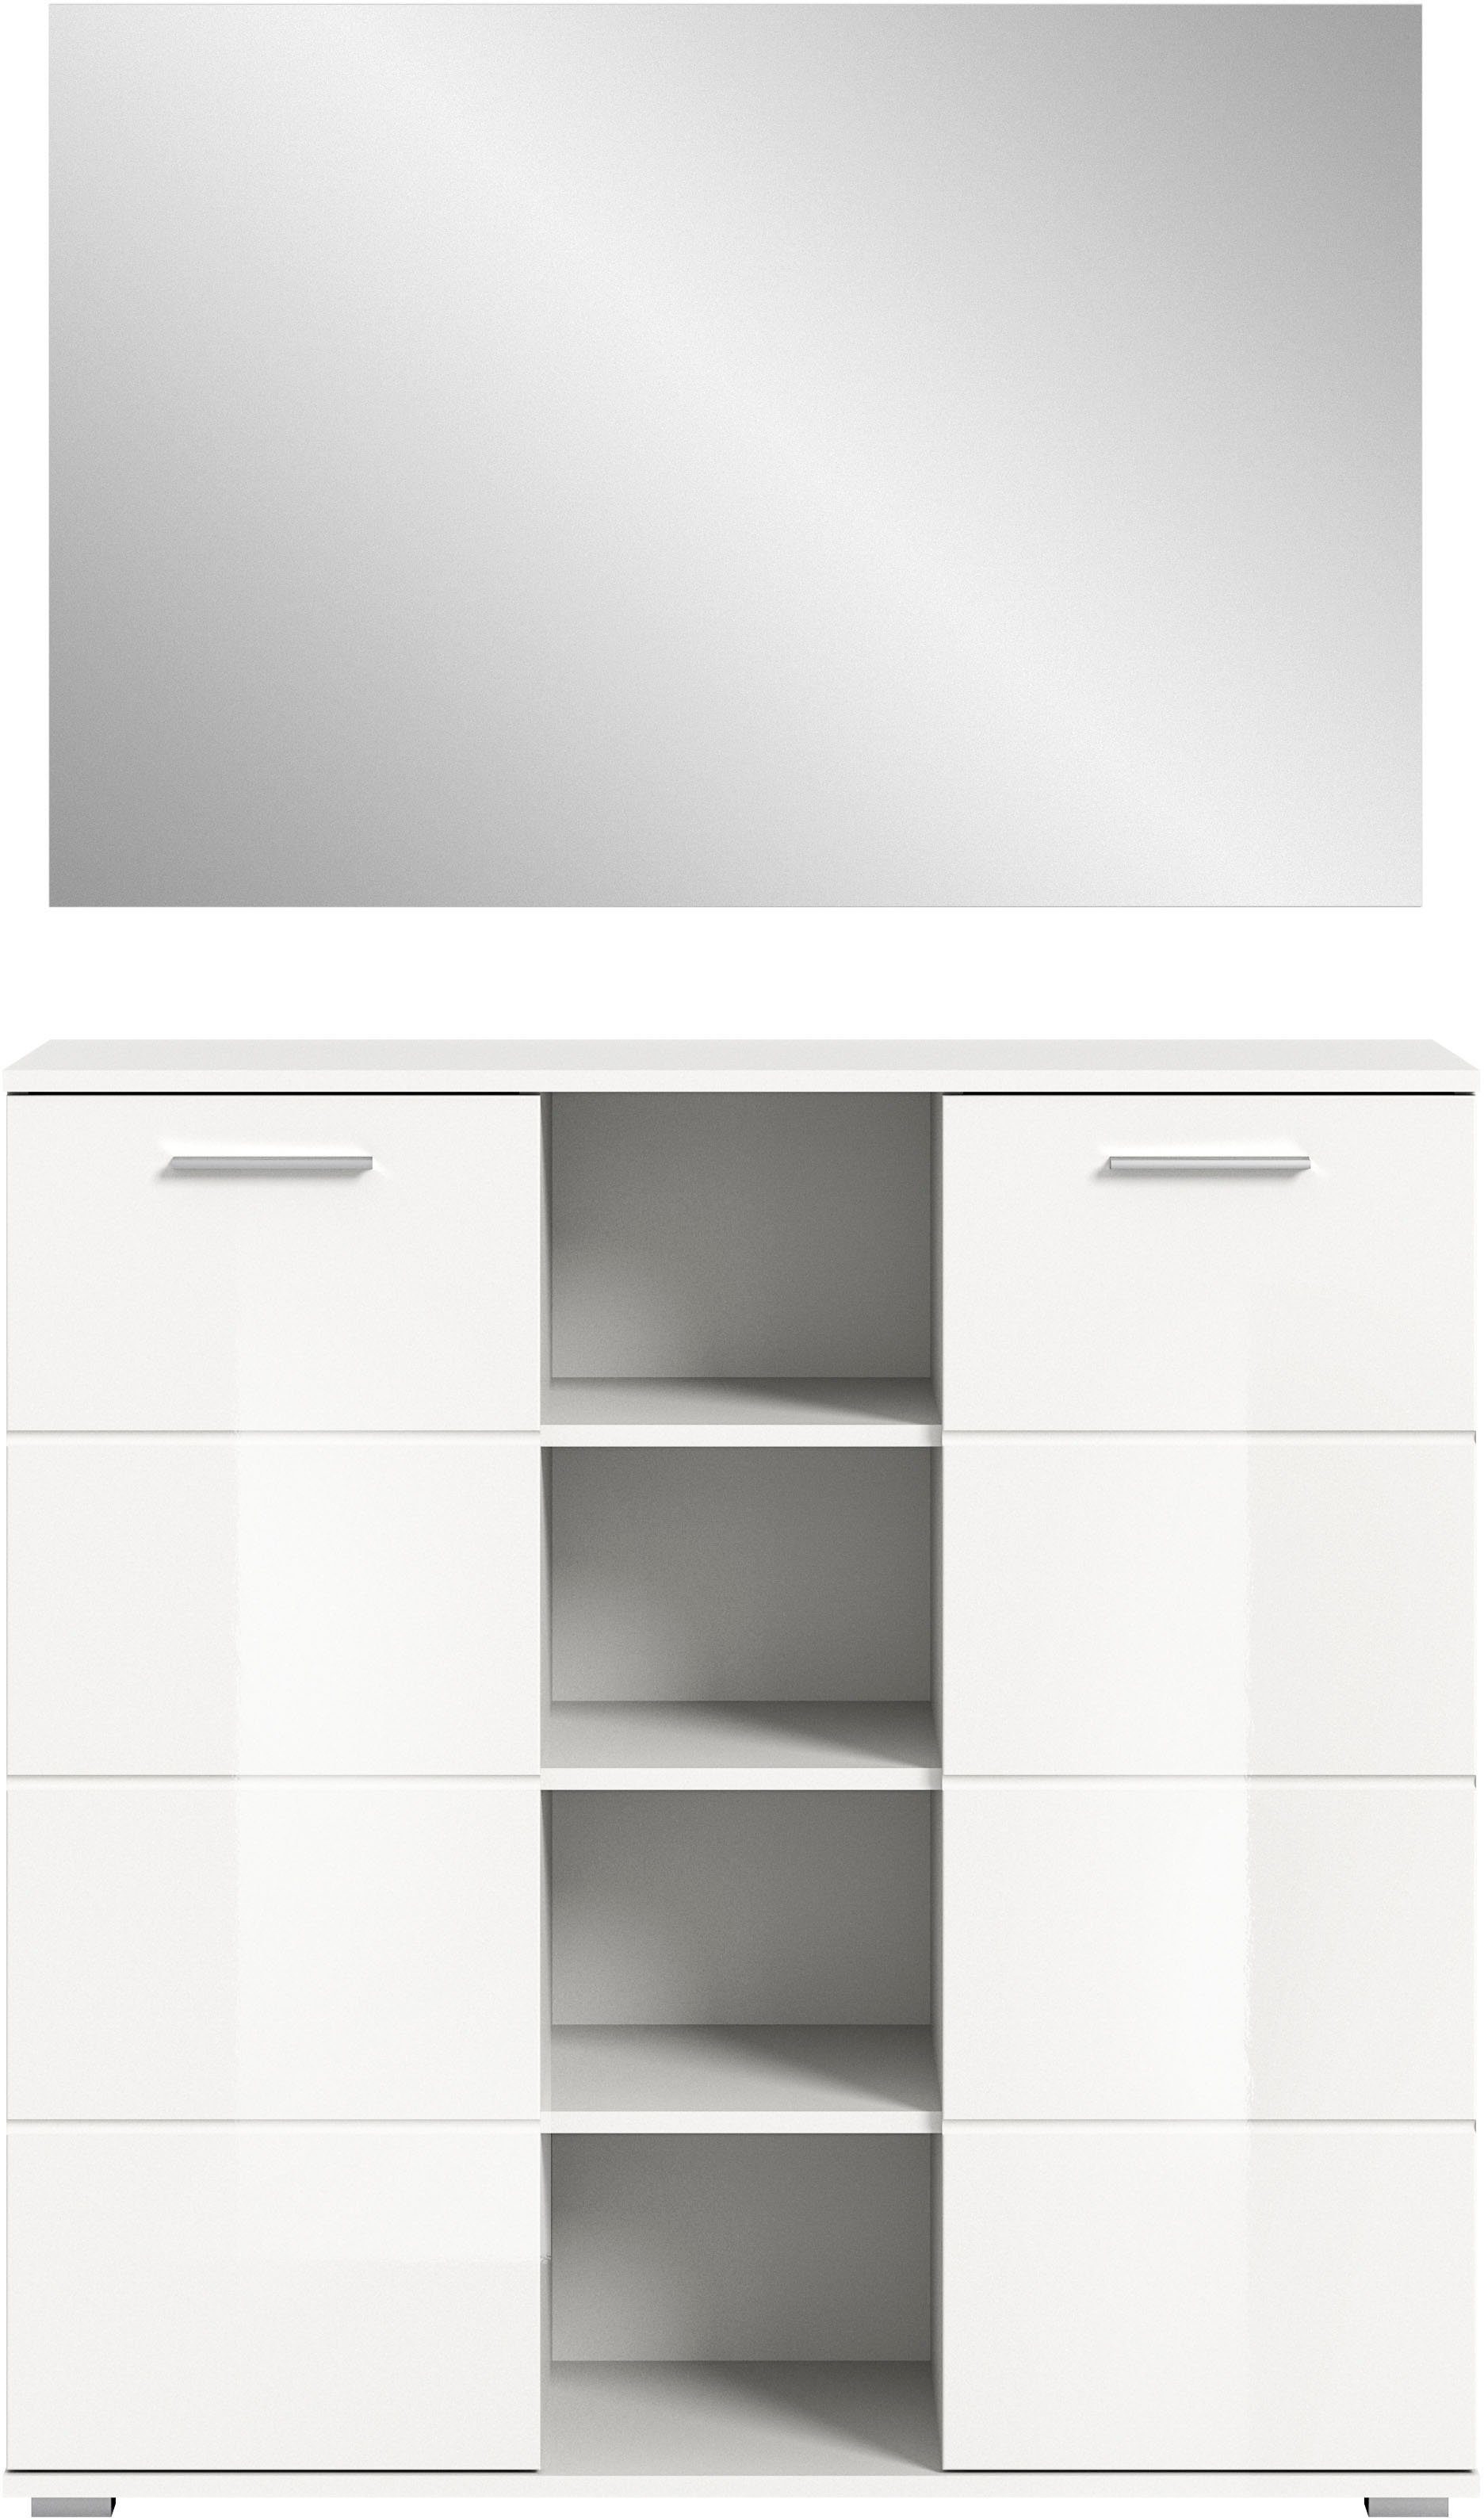 INOSIGN Garderoben-Set Valge, (2-St), individuell mit anderen der Serie kombinierbar Artikeln